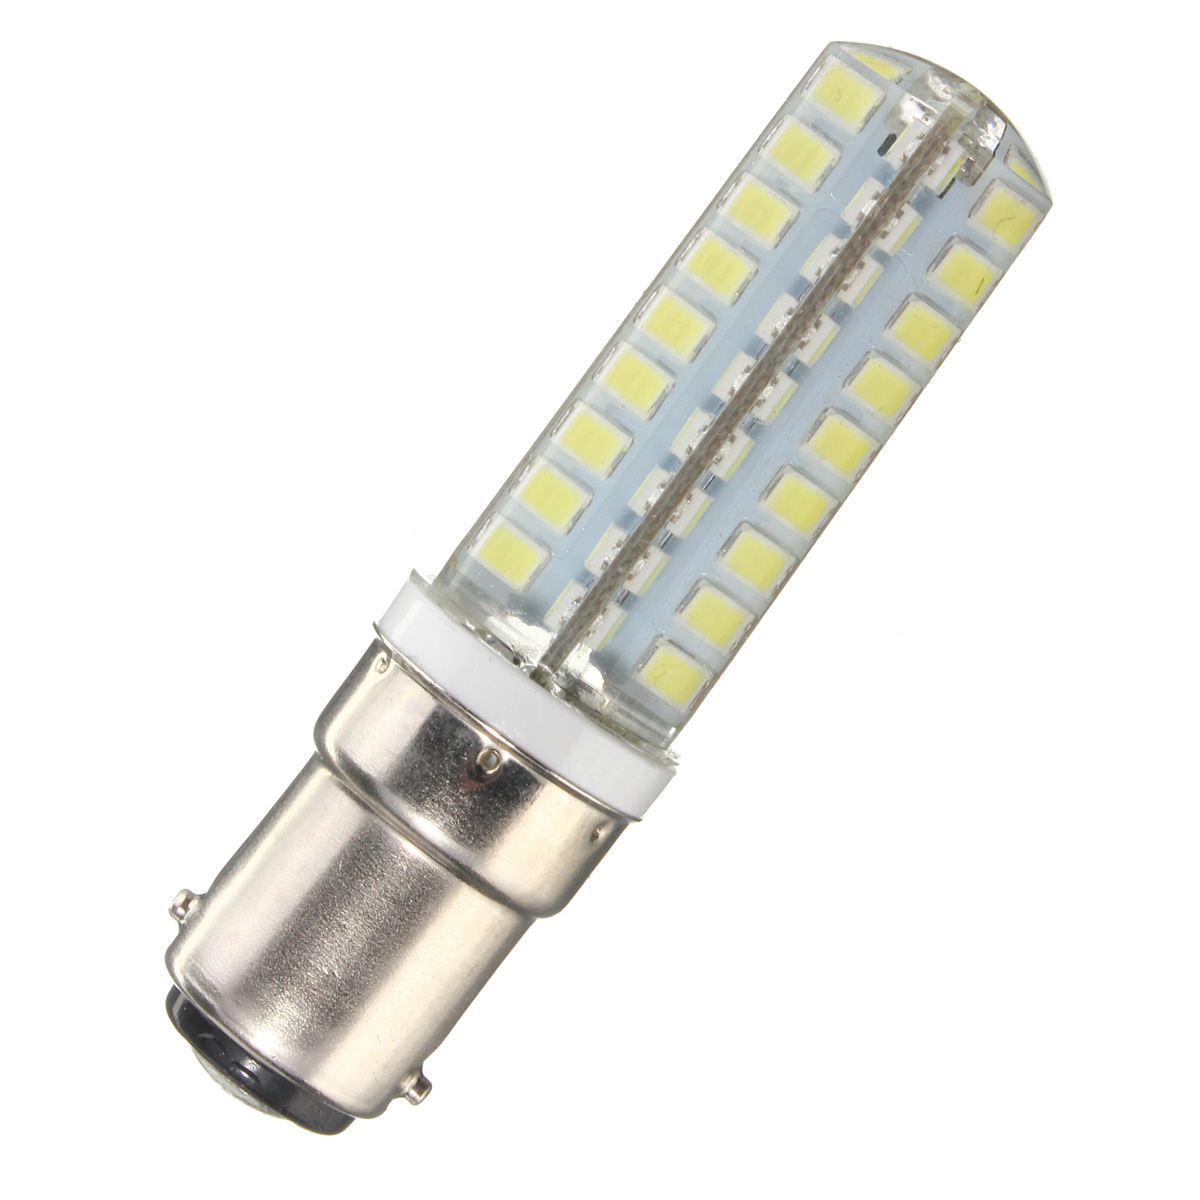 Dimmable-G9-E12-E14-B15-45W-72-SMD-2835-LED-Corn-Bulb-Household-Light-lamp-AC110V-1039655-6